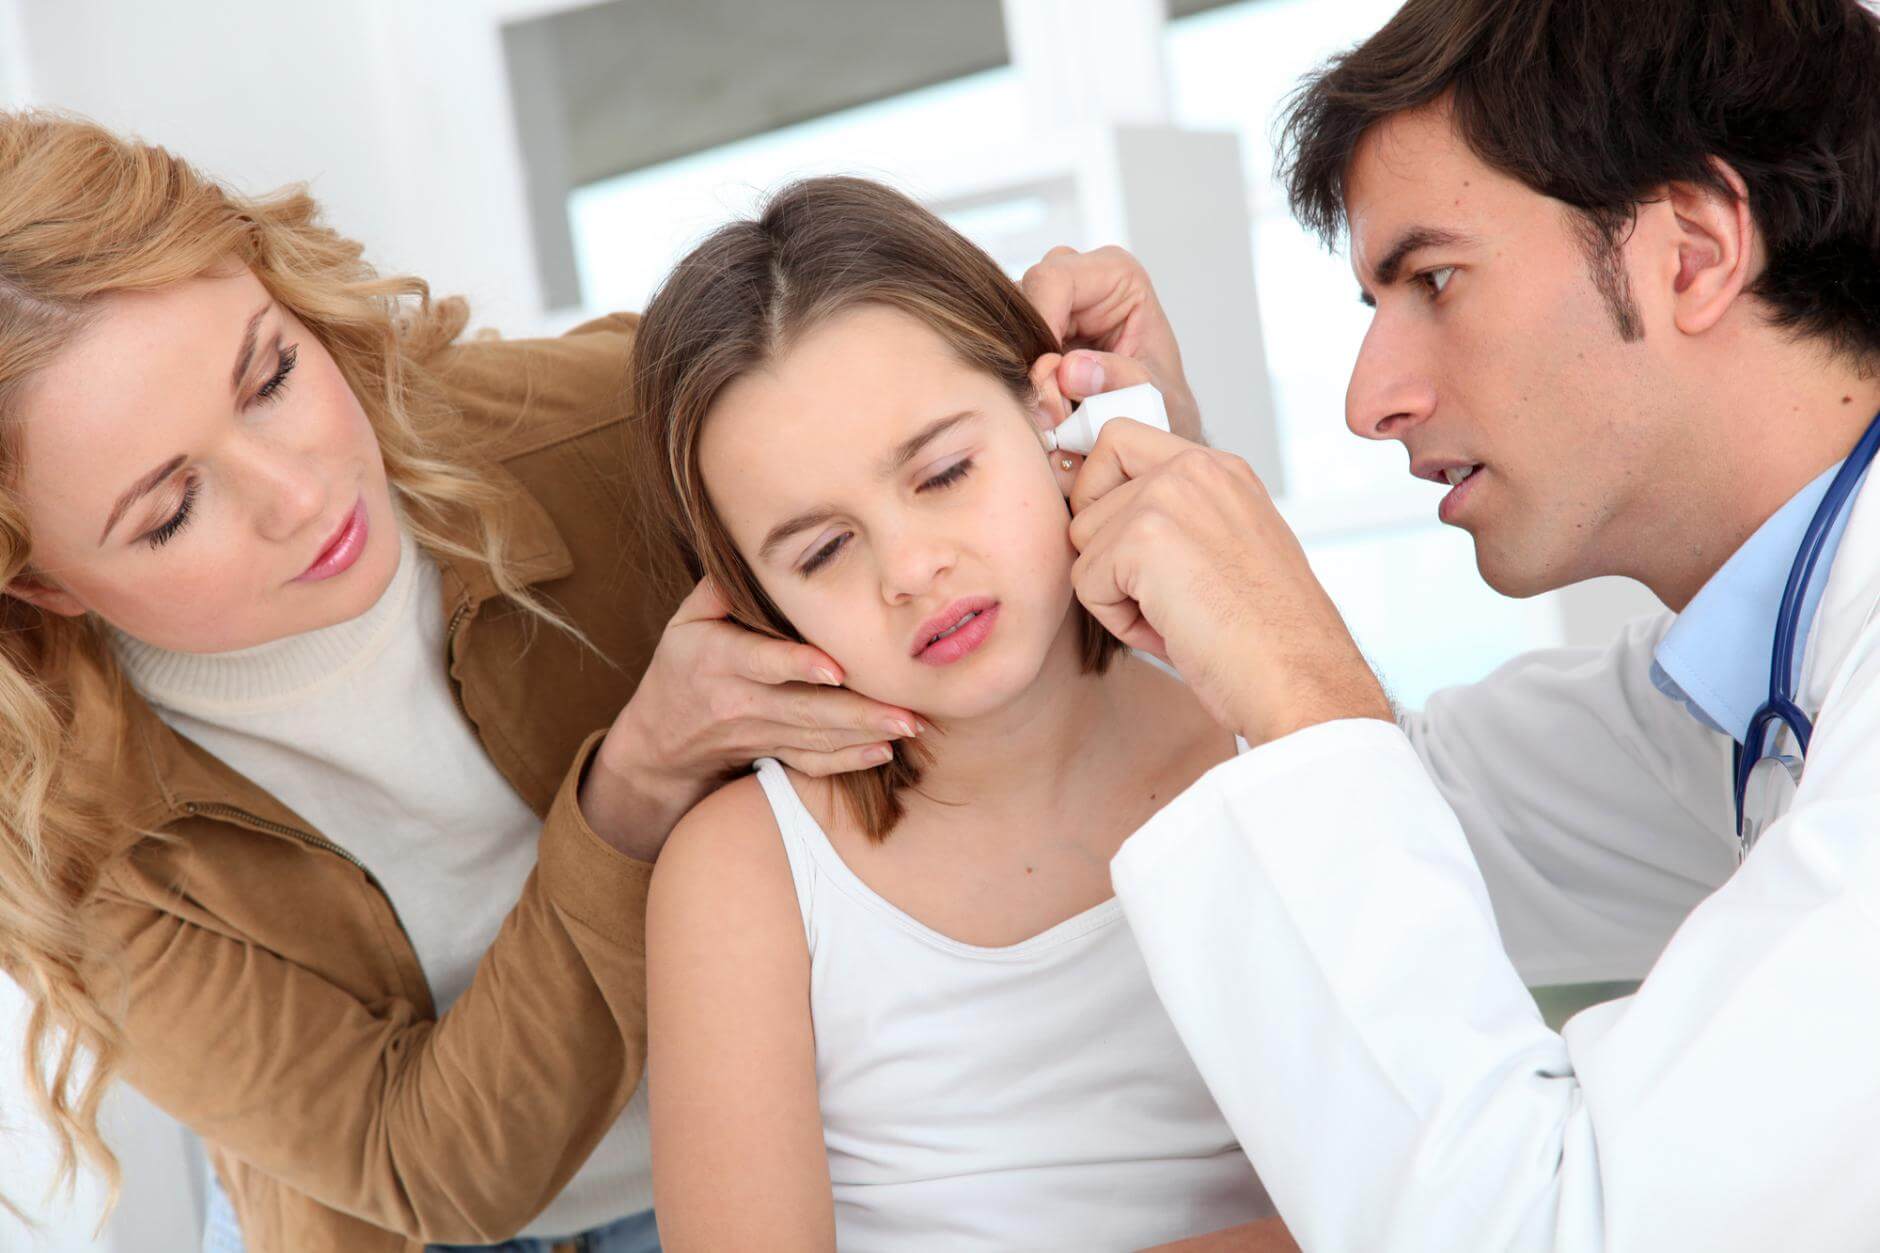 Боли в ушах: причины, разновидности, лечение